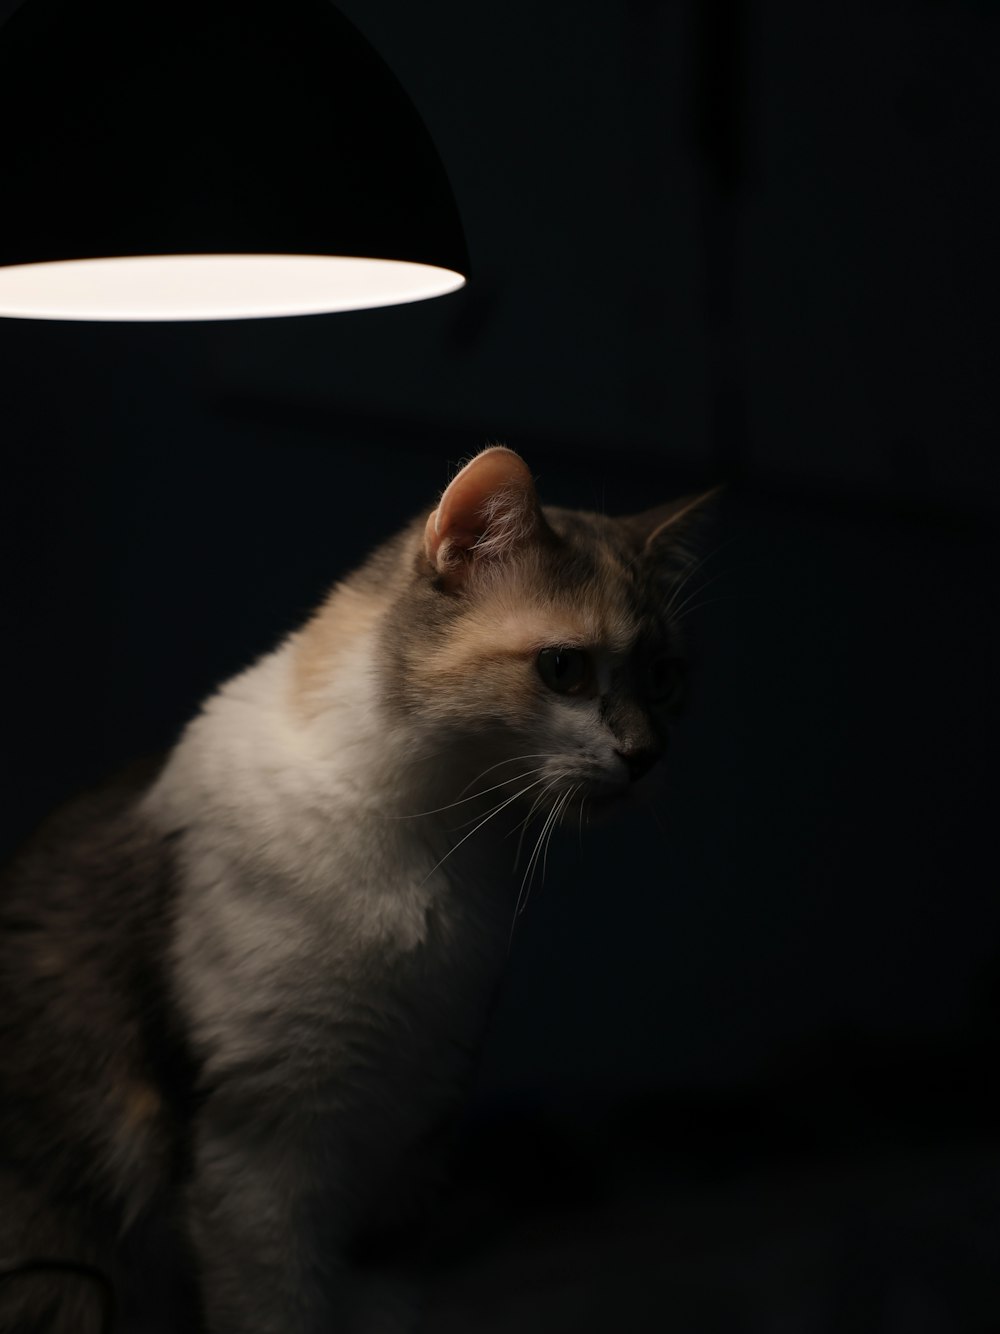 Foto zum Thema Eine katze, die im dunkeln unter einer lampe sitzt –  Kostenloses Bild zu Katze auf Unsplash